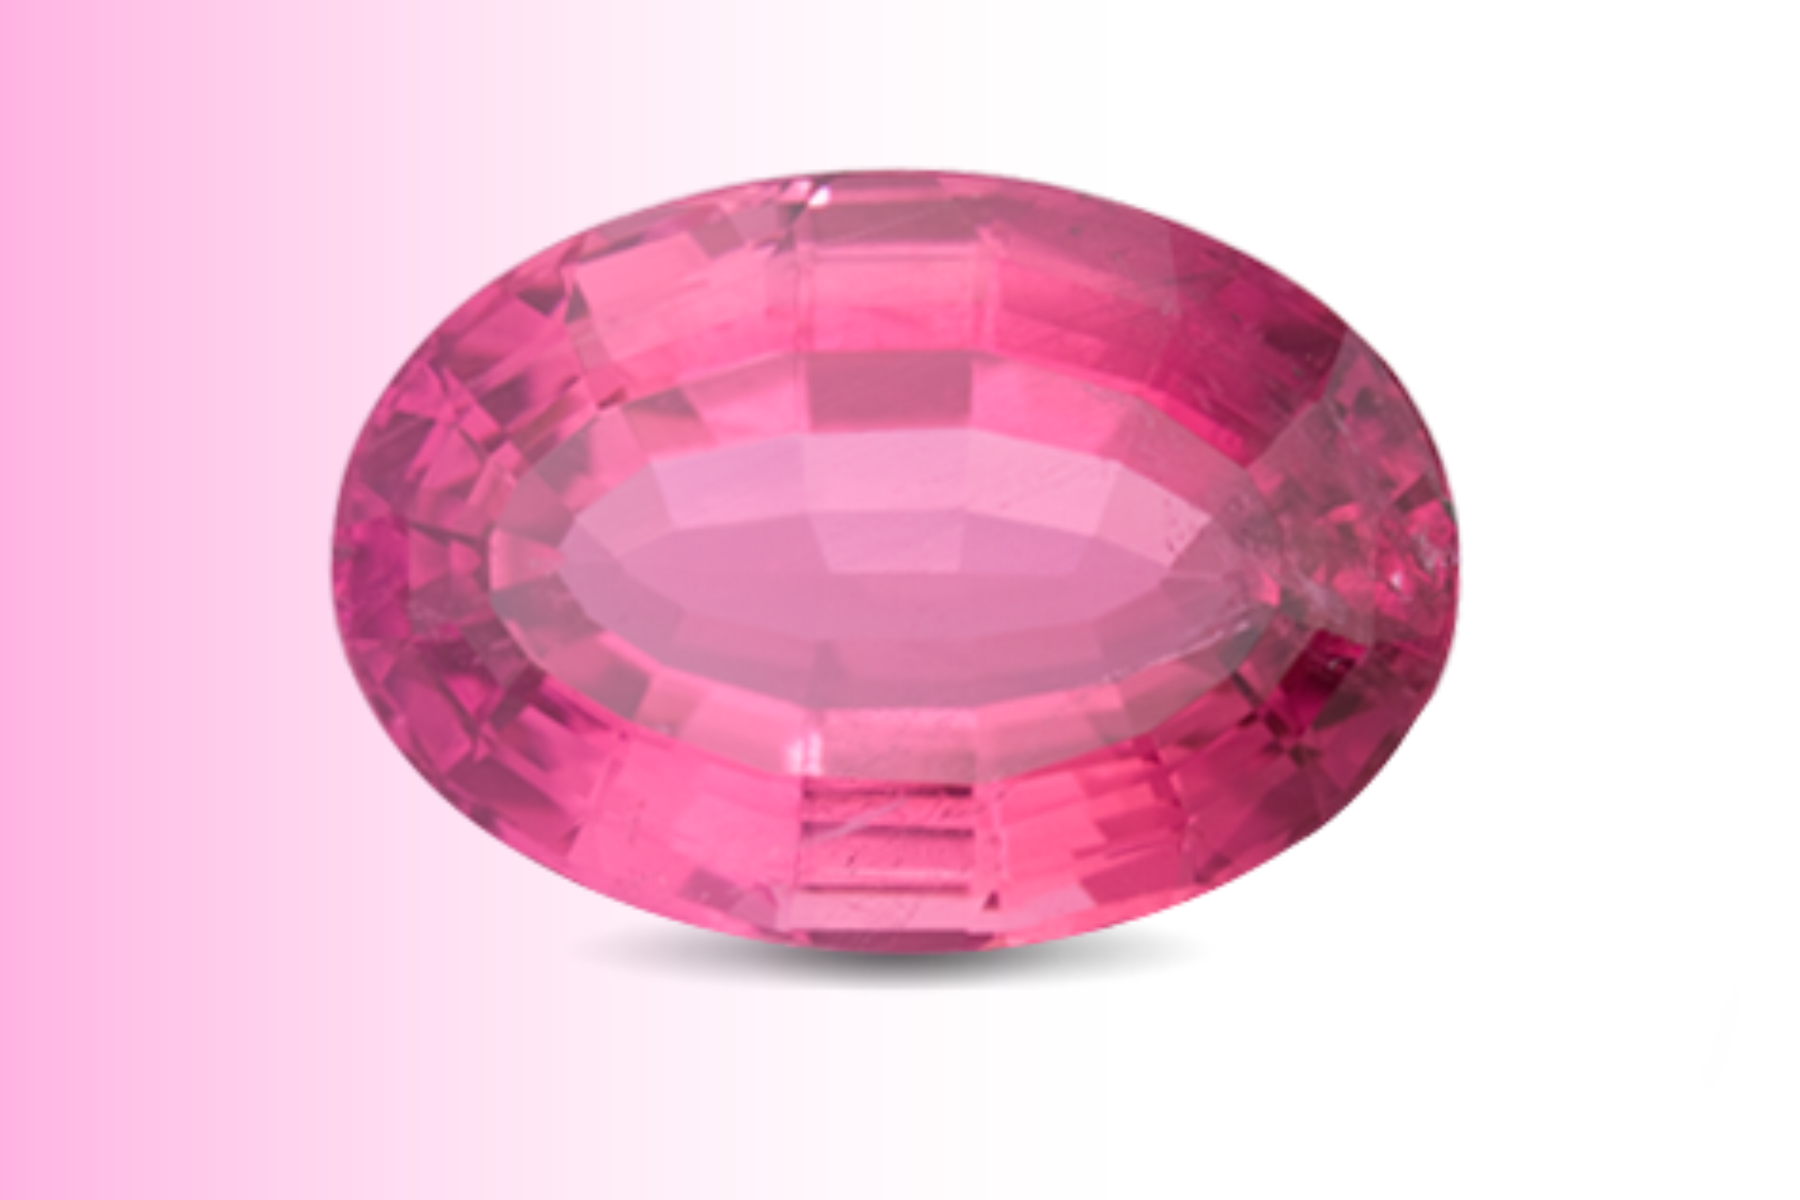 Oblong pink tourmaline stone